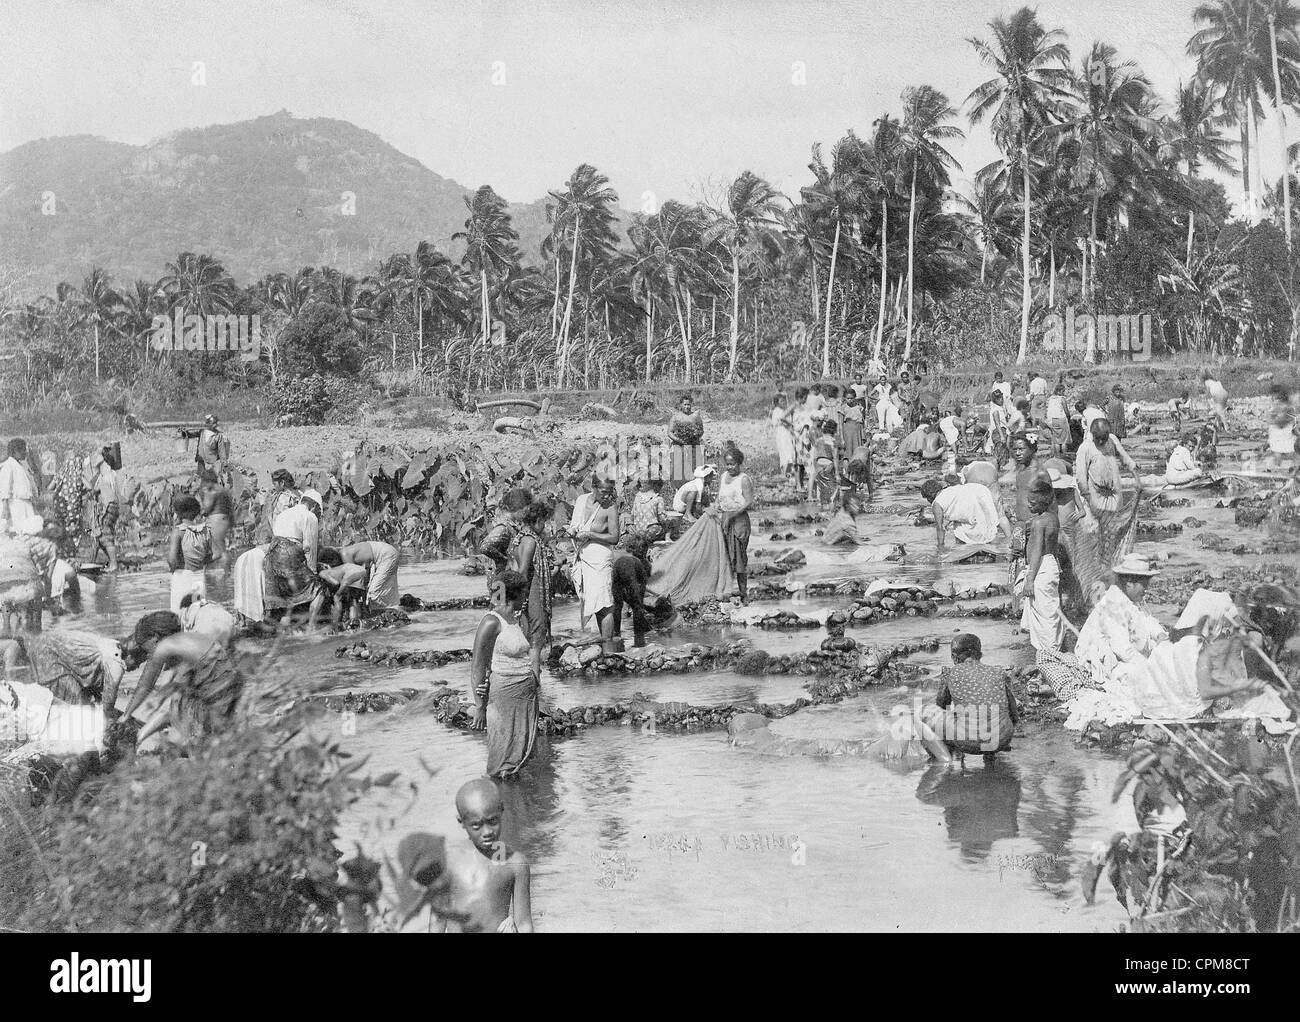 La pêche en rivière dans la colonie allemande de Samoa, autour de 1910 Banque D'Images